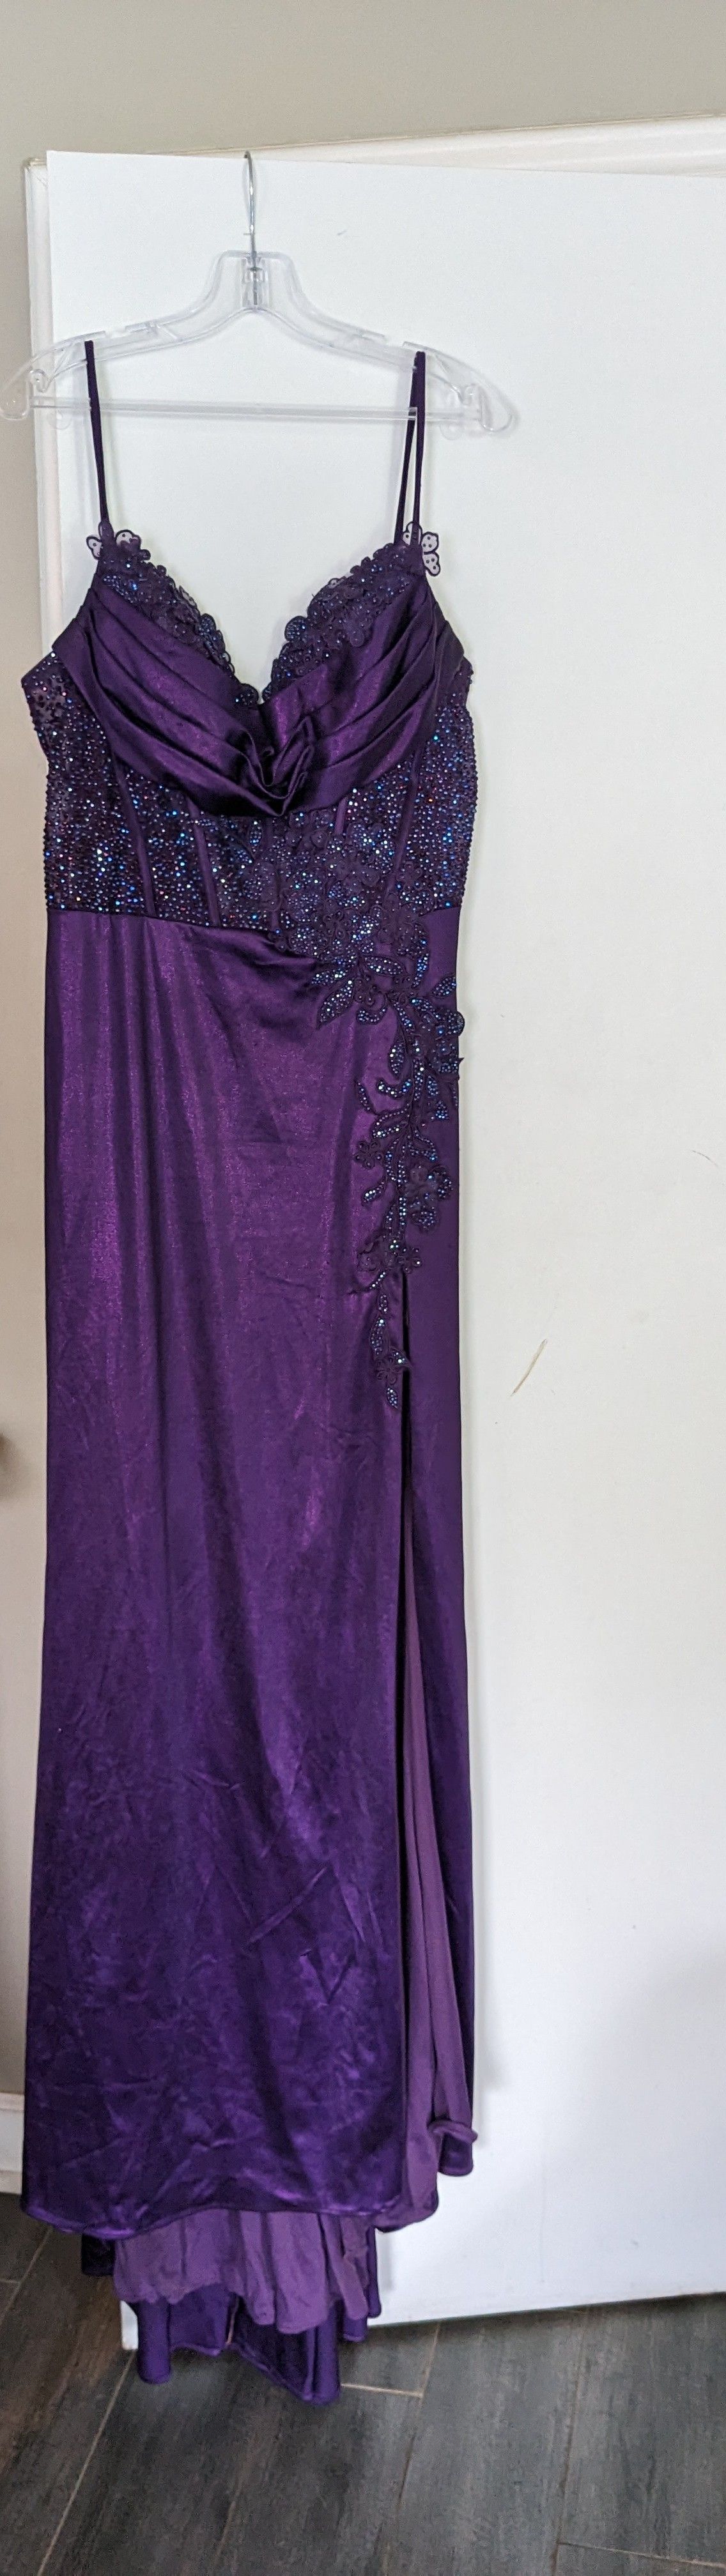 Style EW35028 Ellie Wilde Plus Size 18 Purple Side Slit Dress on Queenly